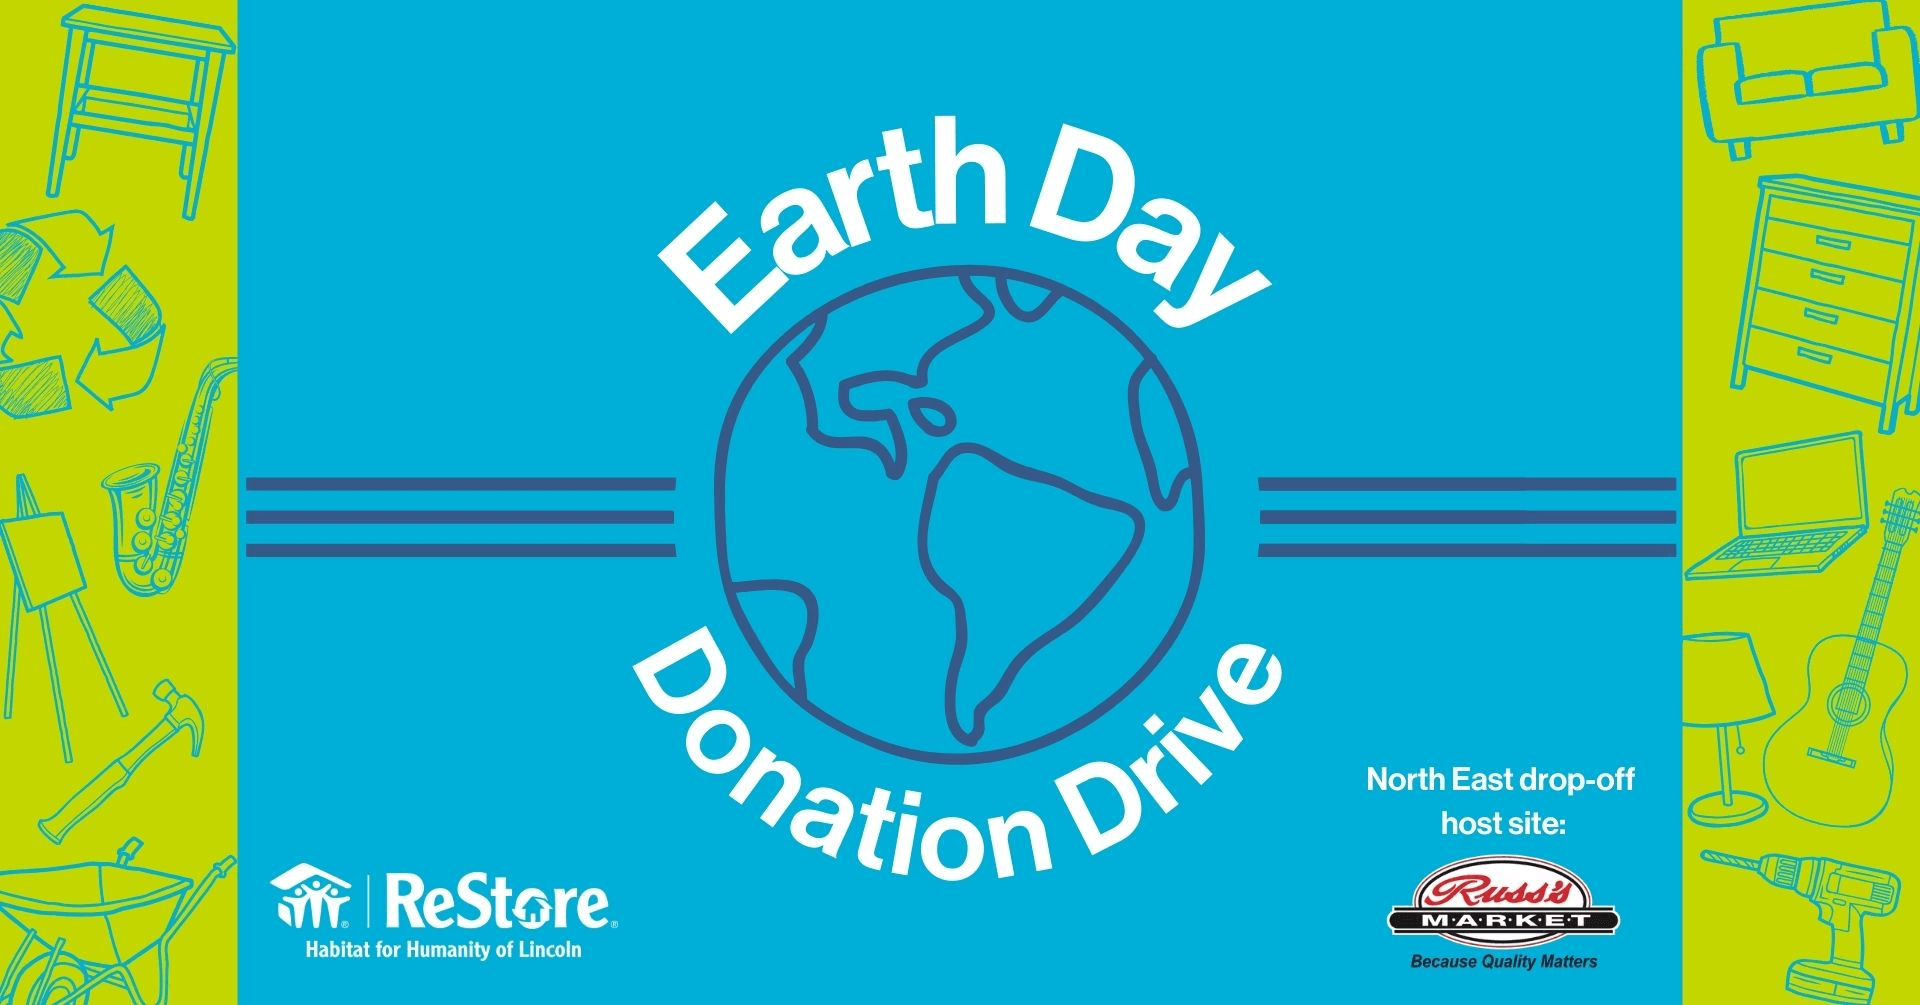 Habitat ReStore's Earth Day Donation Drive